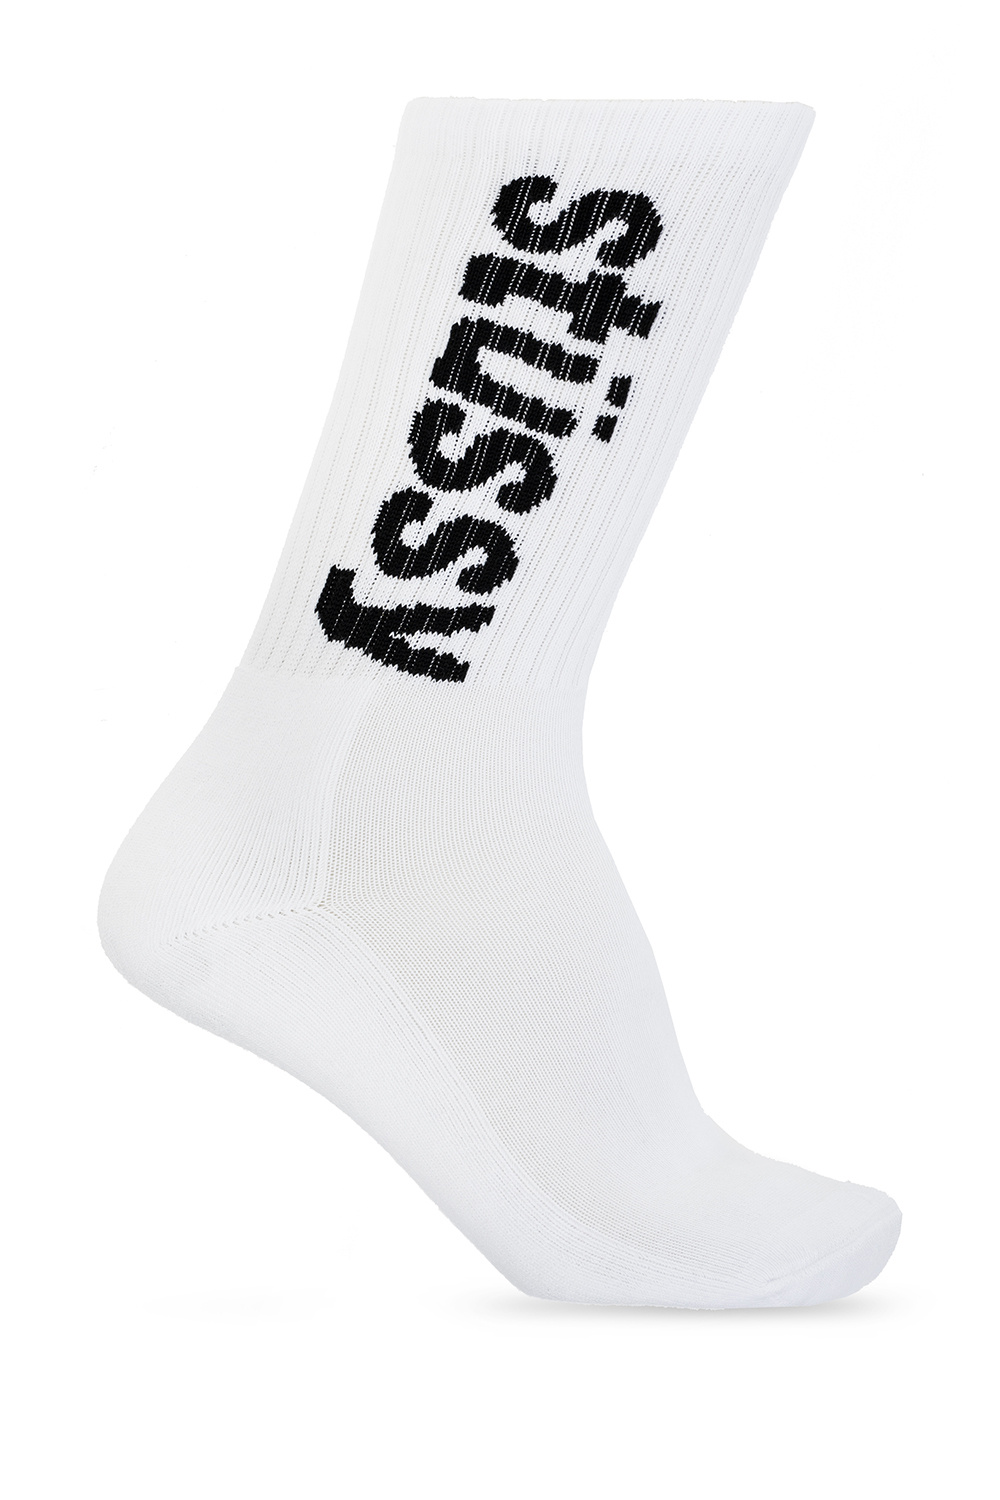 Stussy Socks with logo | Men's Clothing | Vitkac